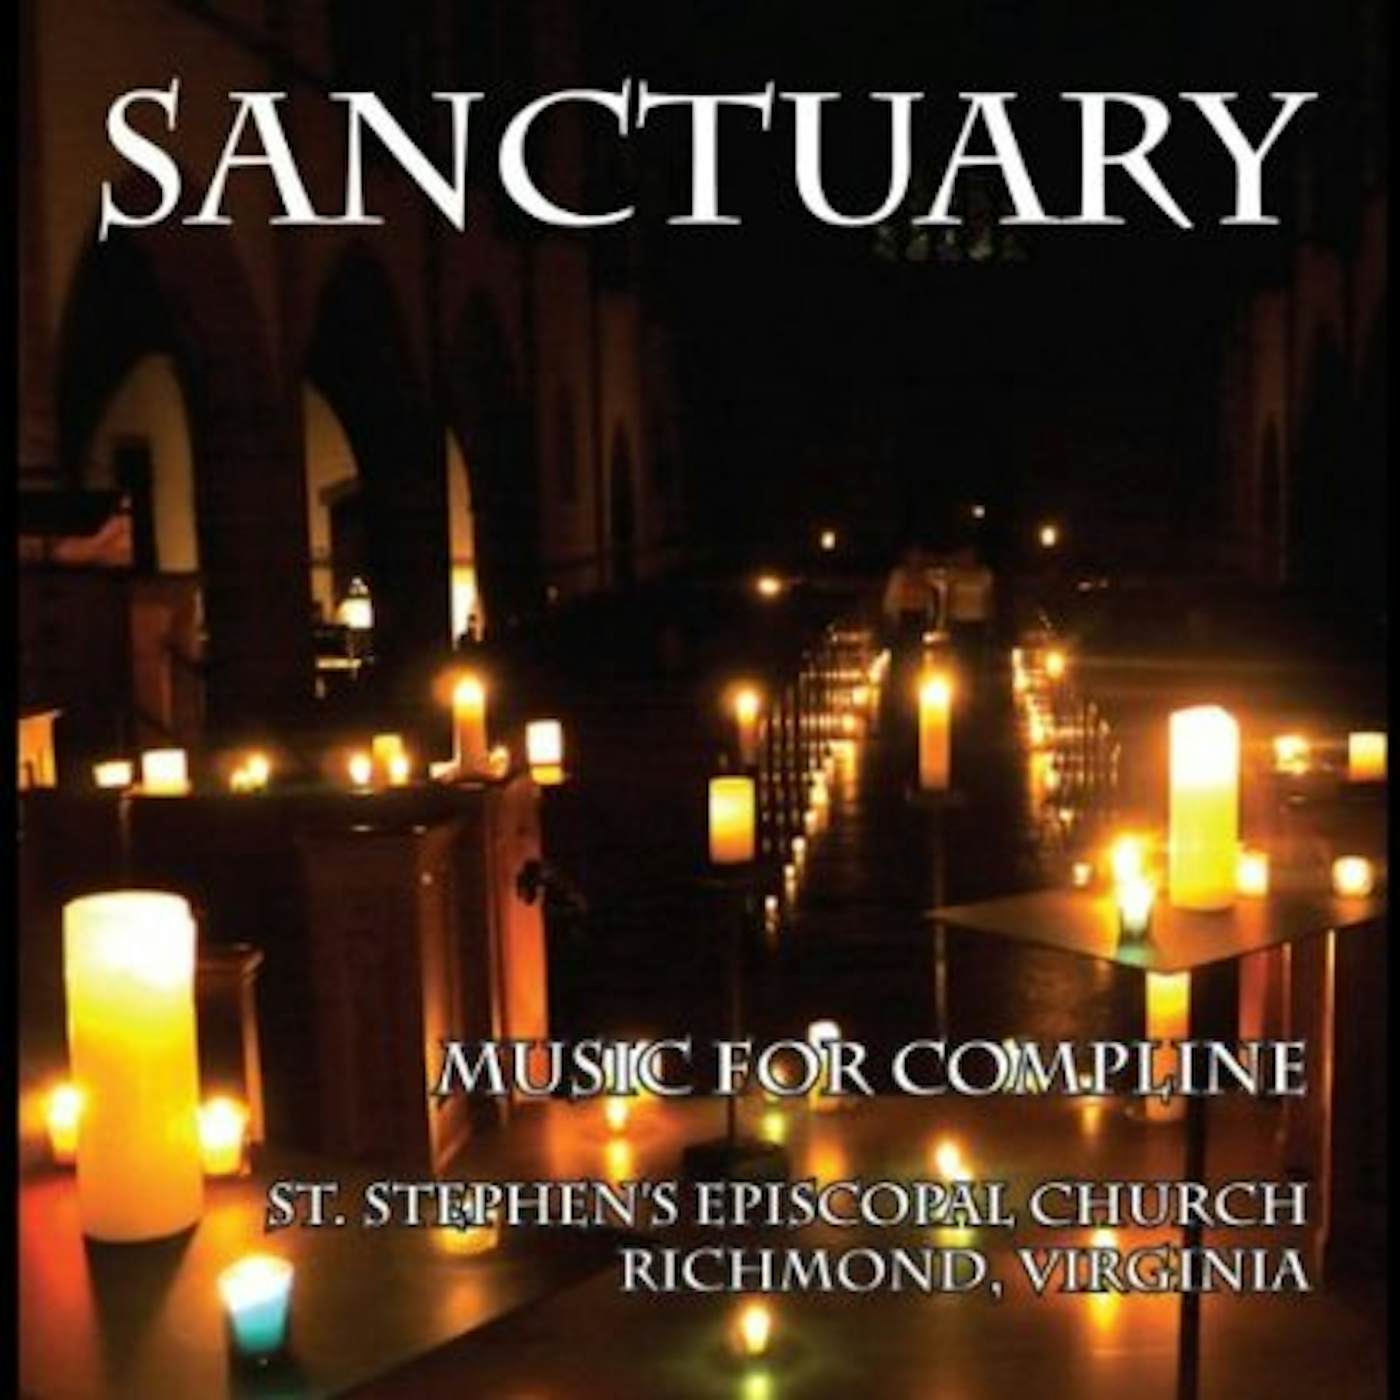 SANCTUARY: MUSIC FOR COMPLINE CD